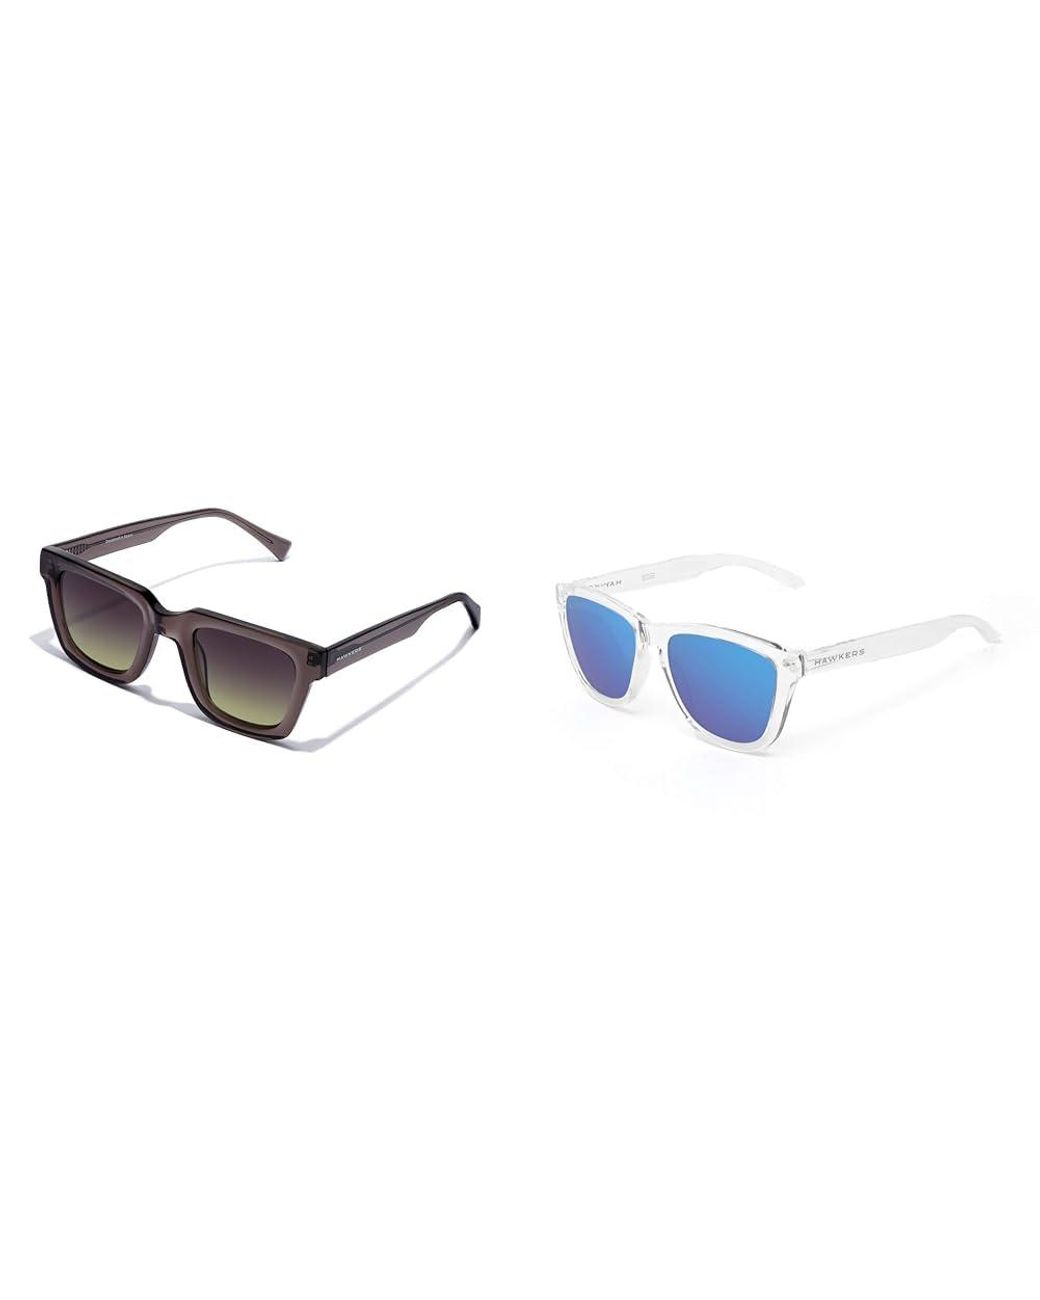 Gafas de sol Cristal Grey Moss Head + Gafas de sol Transparente/Azul Talla  única de Hawkers de color Azul | Lyst